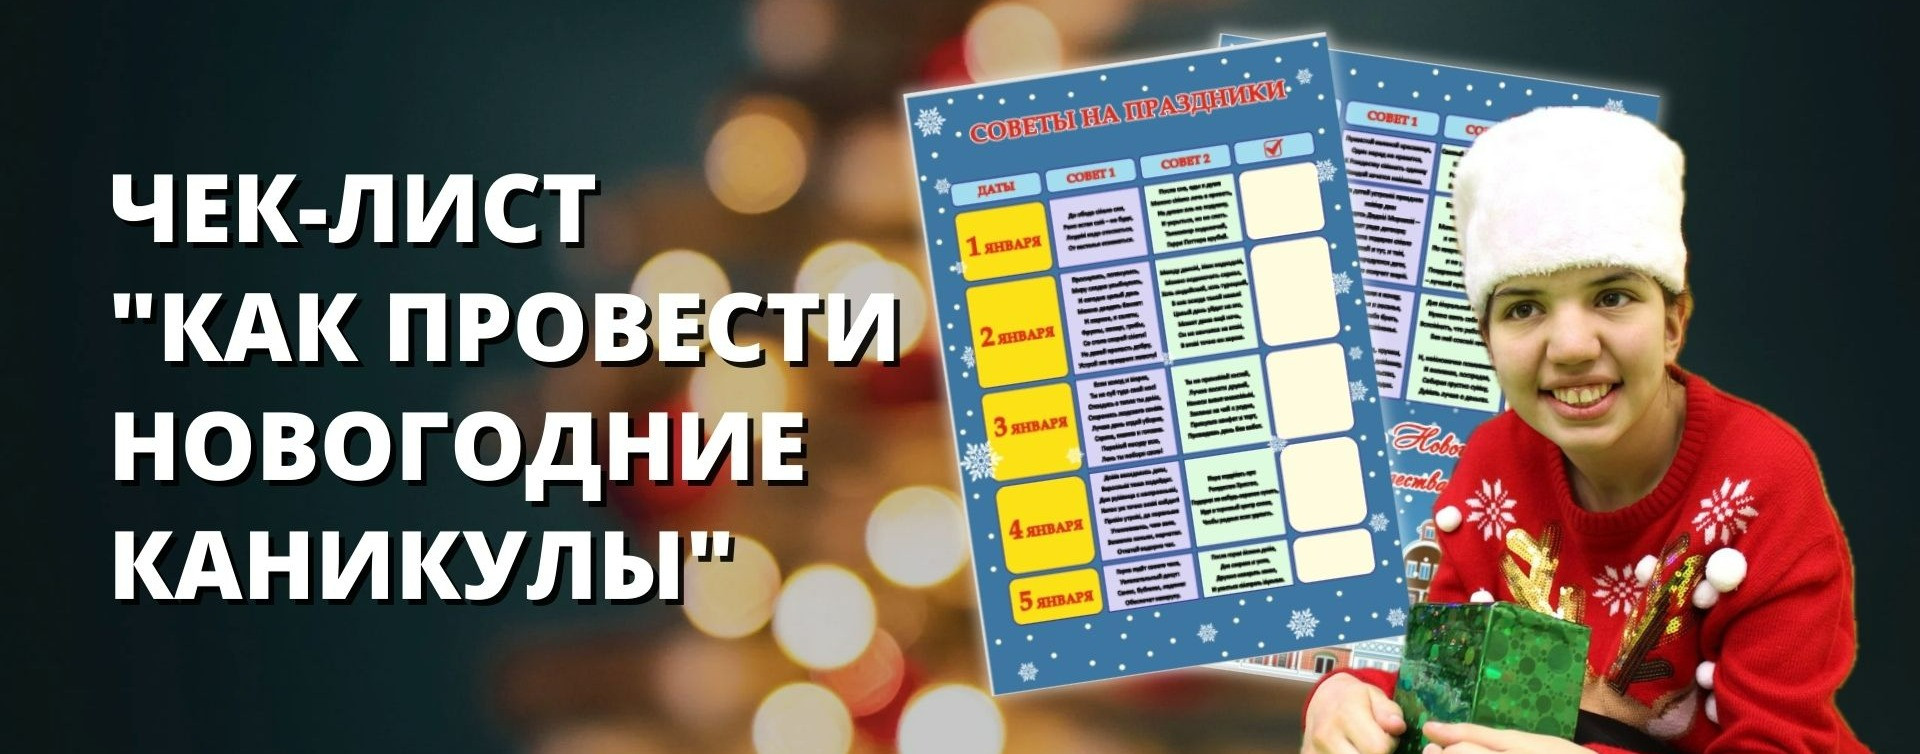 Полина Шарипова: Чек-лист "Как провести новогодние каникулы"